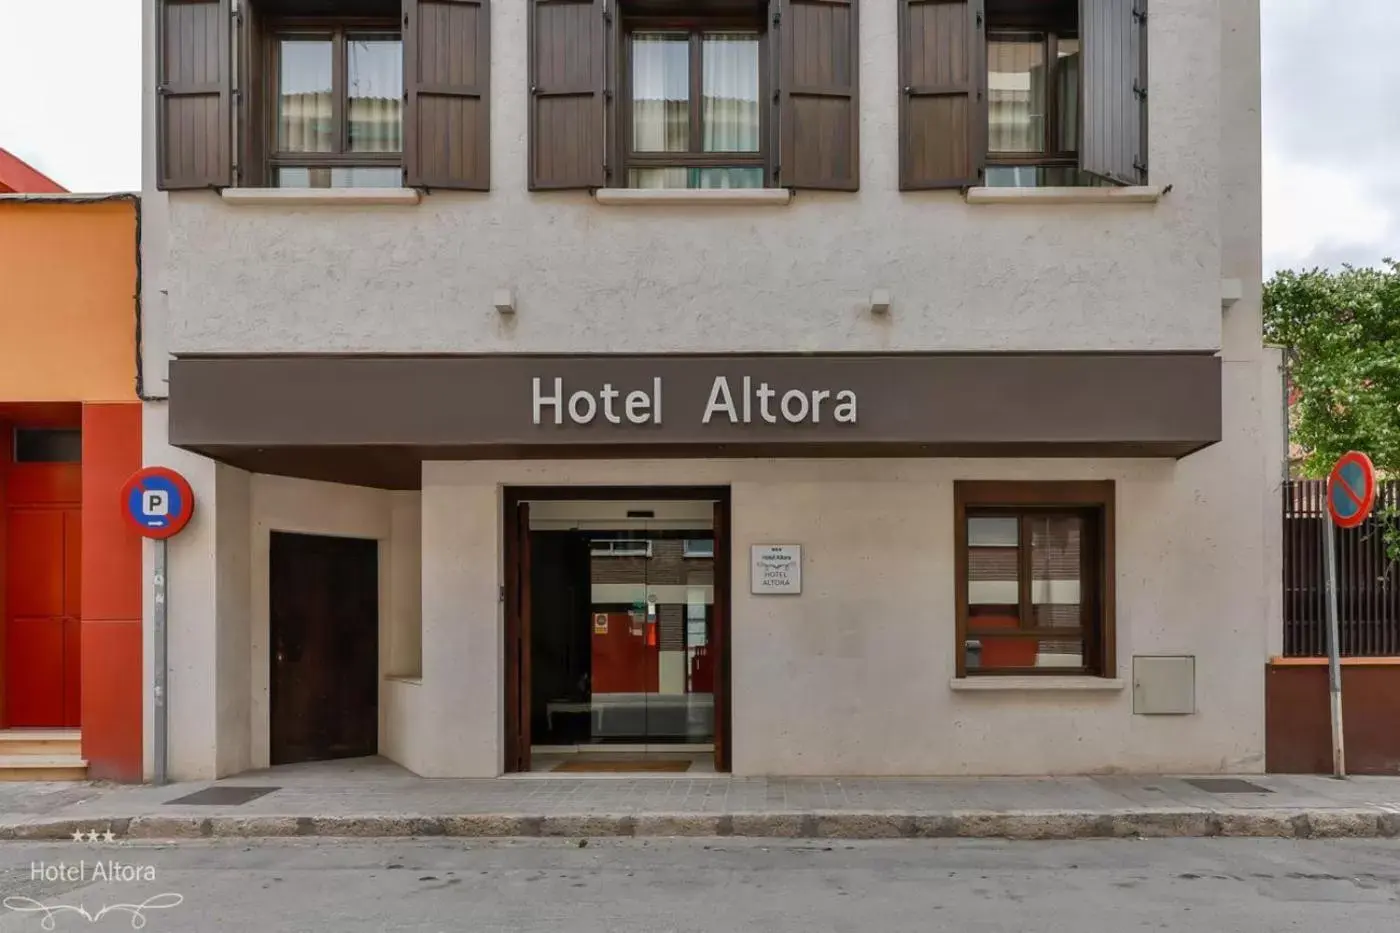 Facade/entrance in Hotel Altora